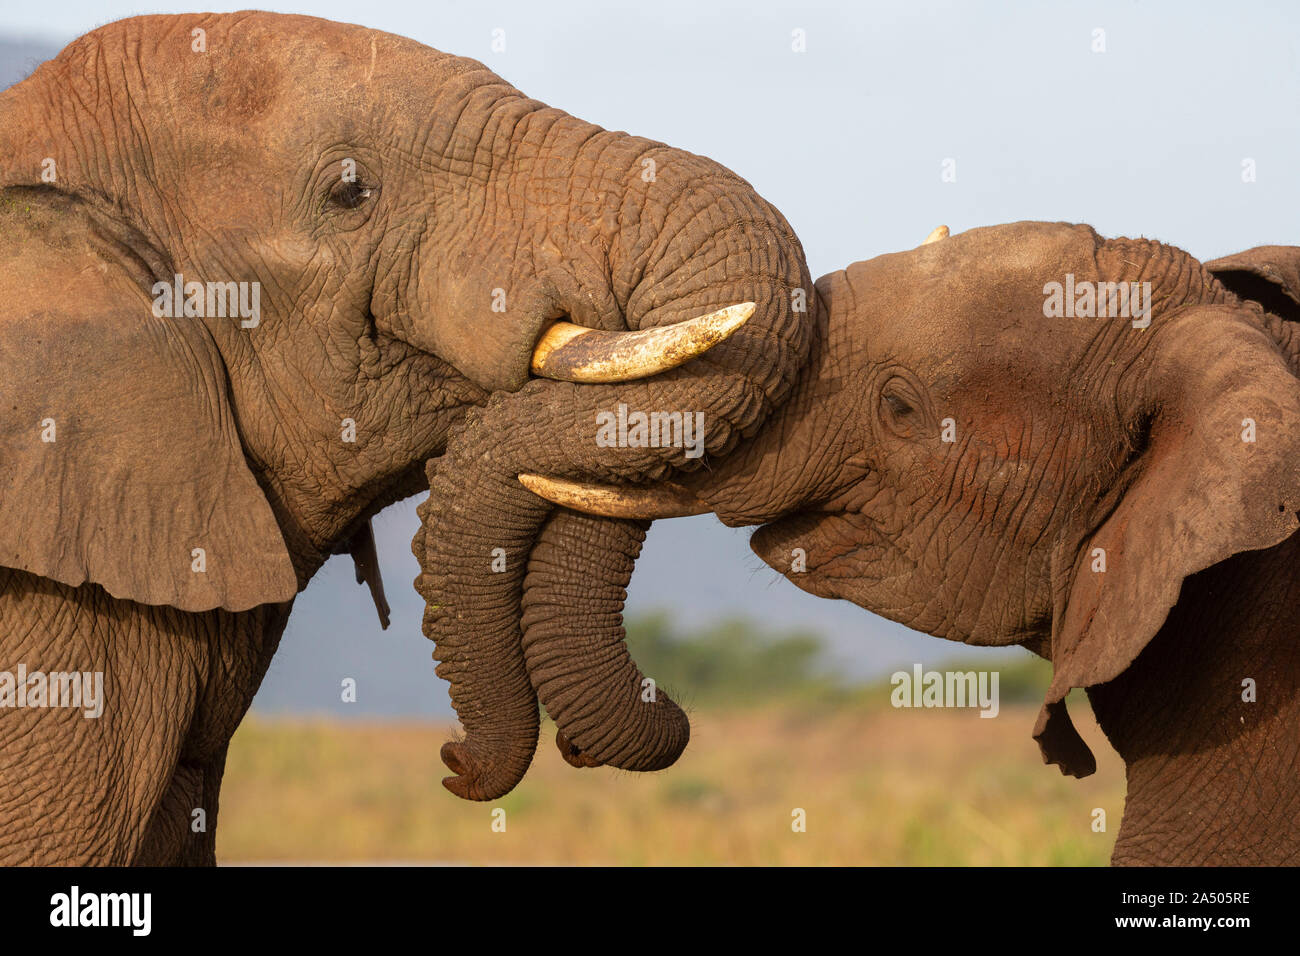 Afrikanische Elefanten (Loxodonta africana), Zimanga Game Reserve, KwaZulu-Natal, Südafrika Stockfoto